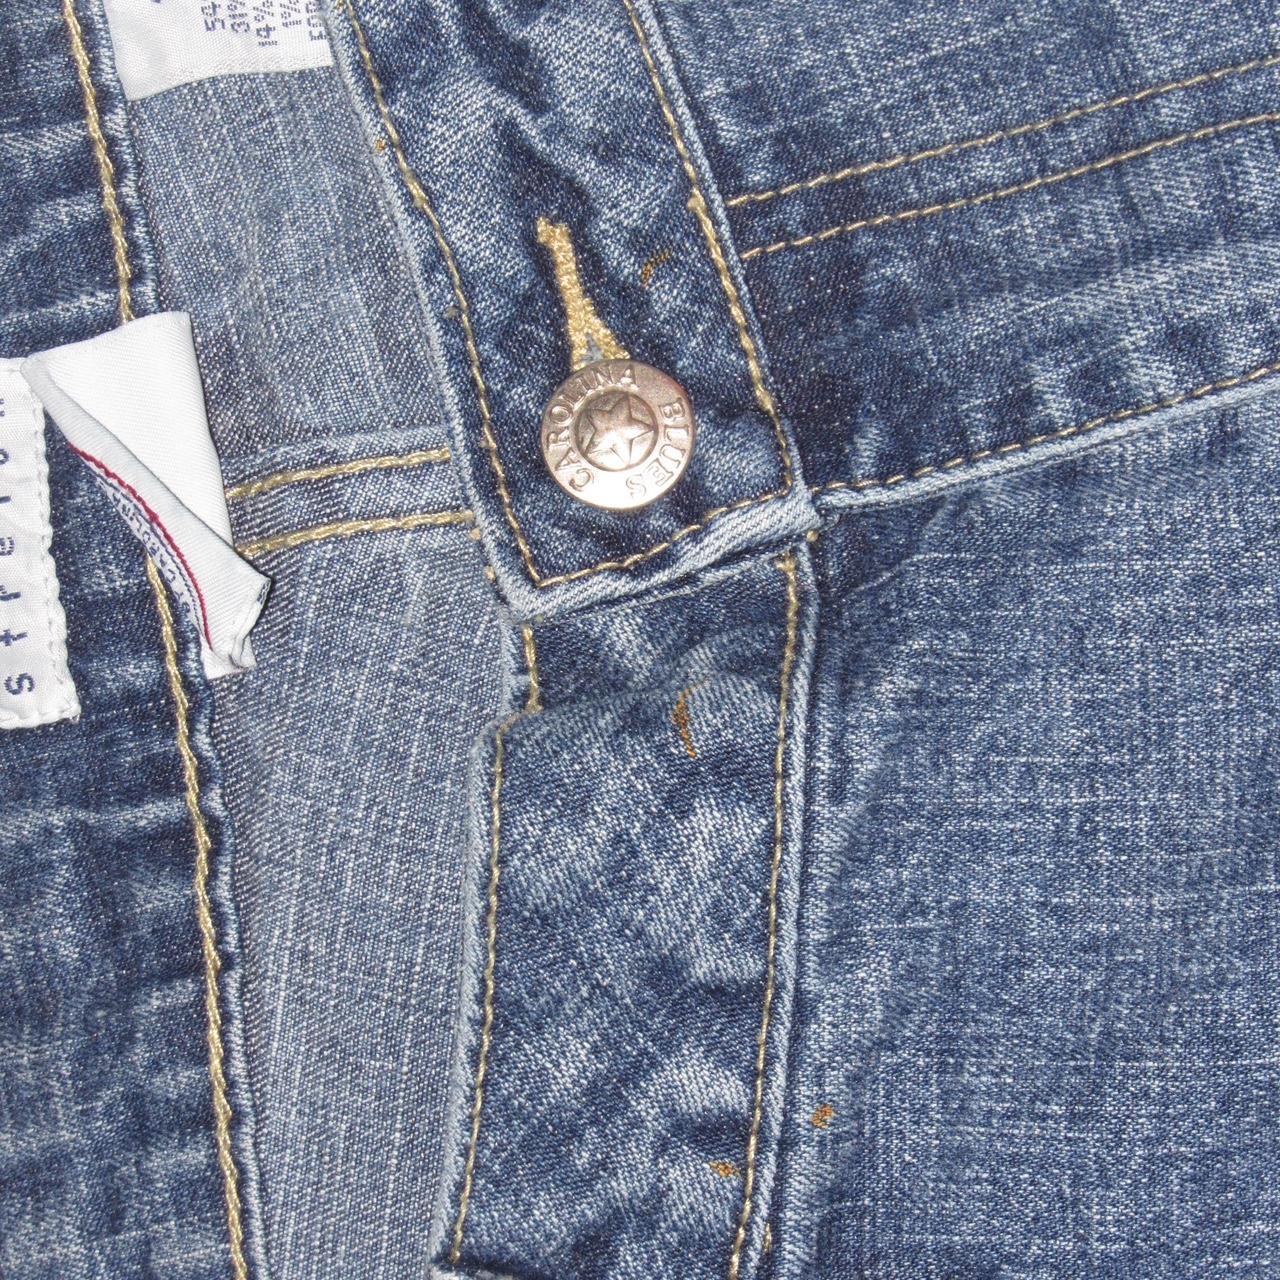 Louis Vuitton men's jeans size 32w 38L brands new - Depop